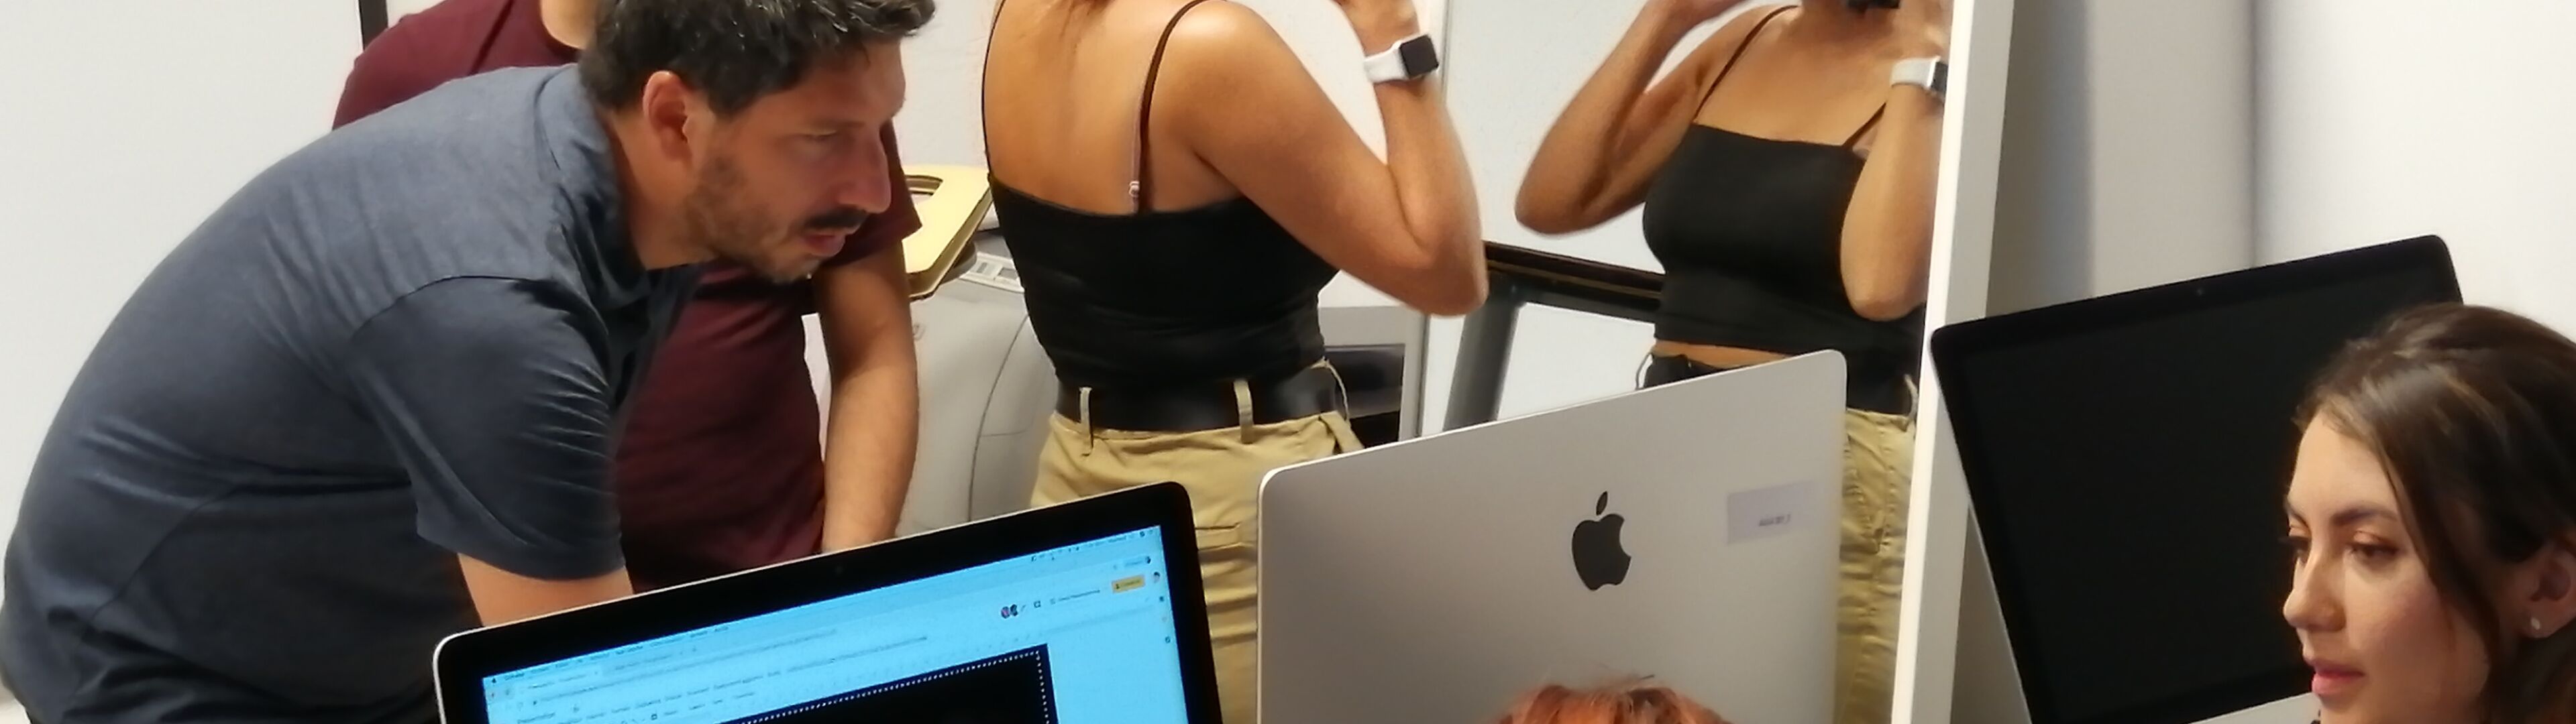 Un grup de professionals treballant junts al voltant d'ordinadors en una oficina, una persona ajustant un casc davant d'un mirall.